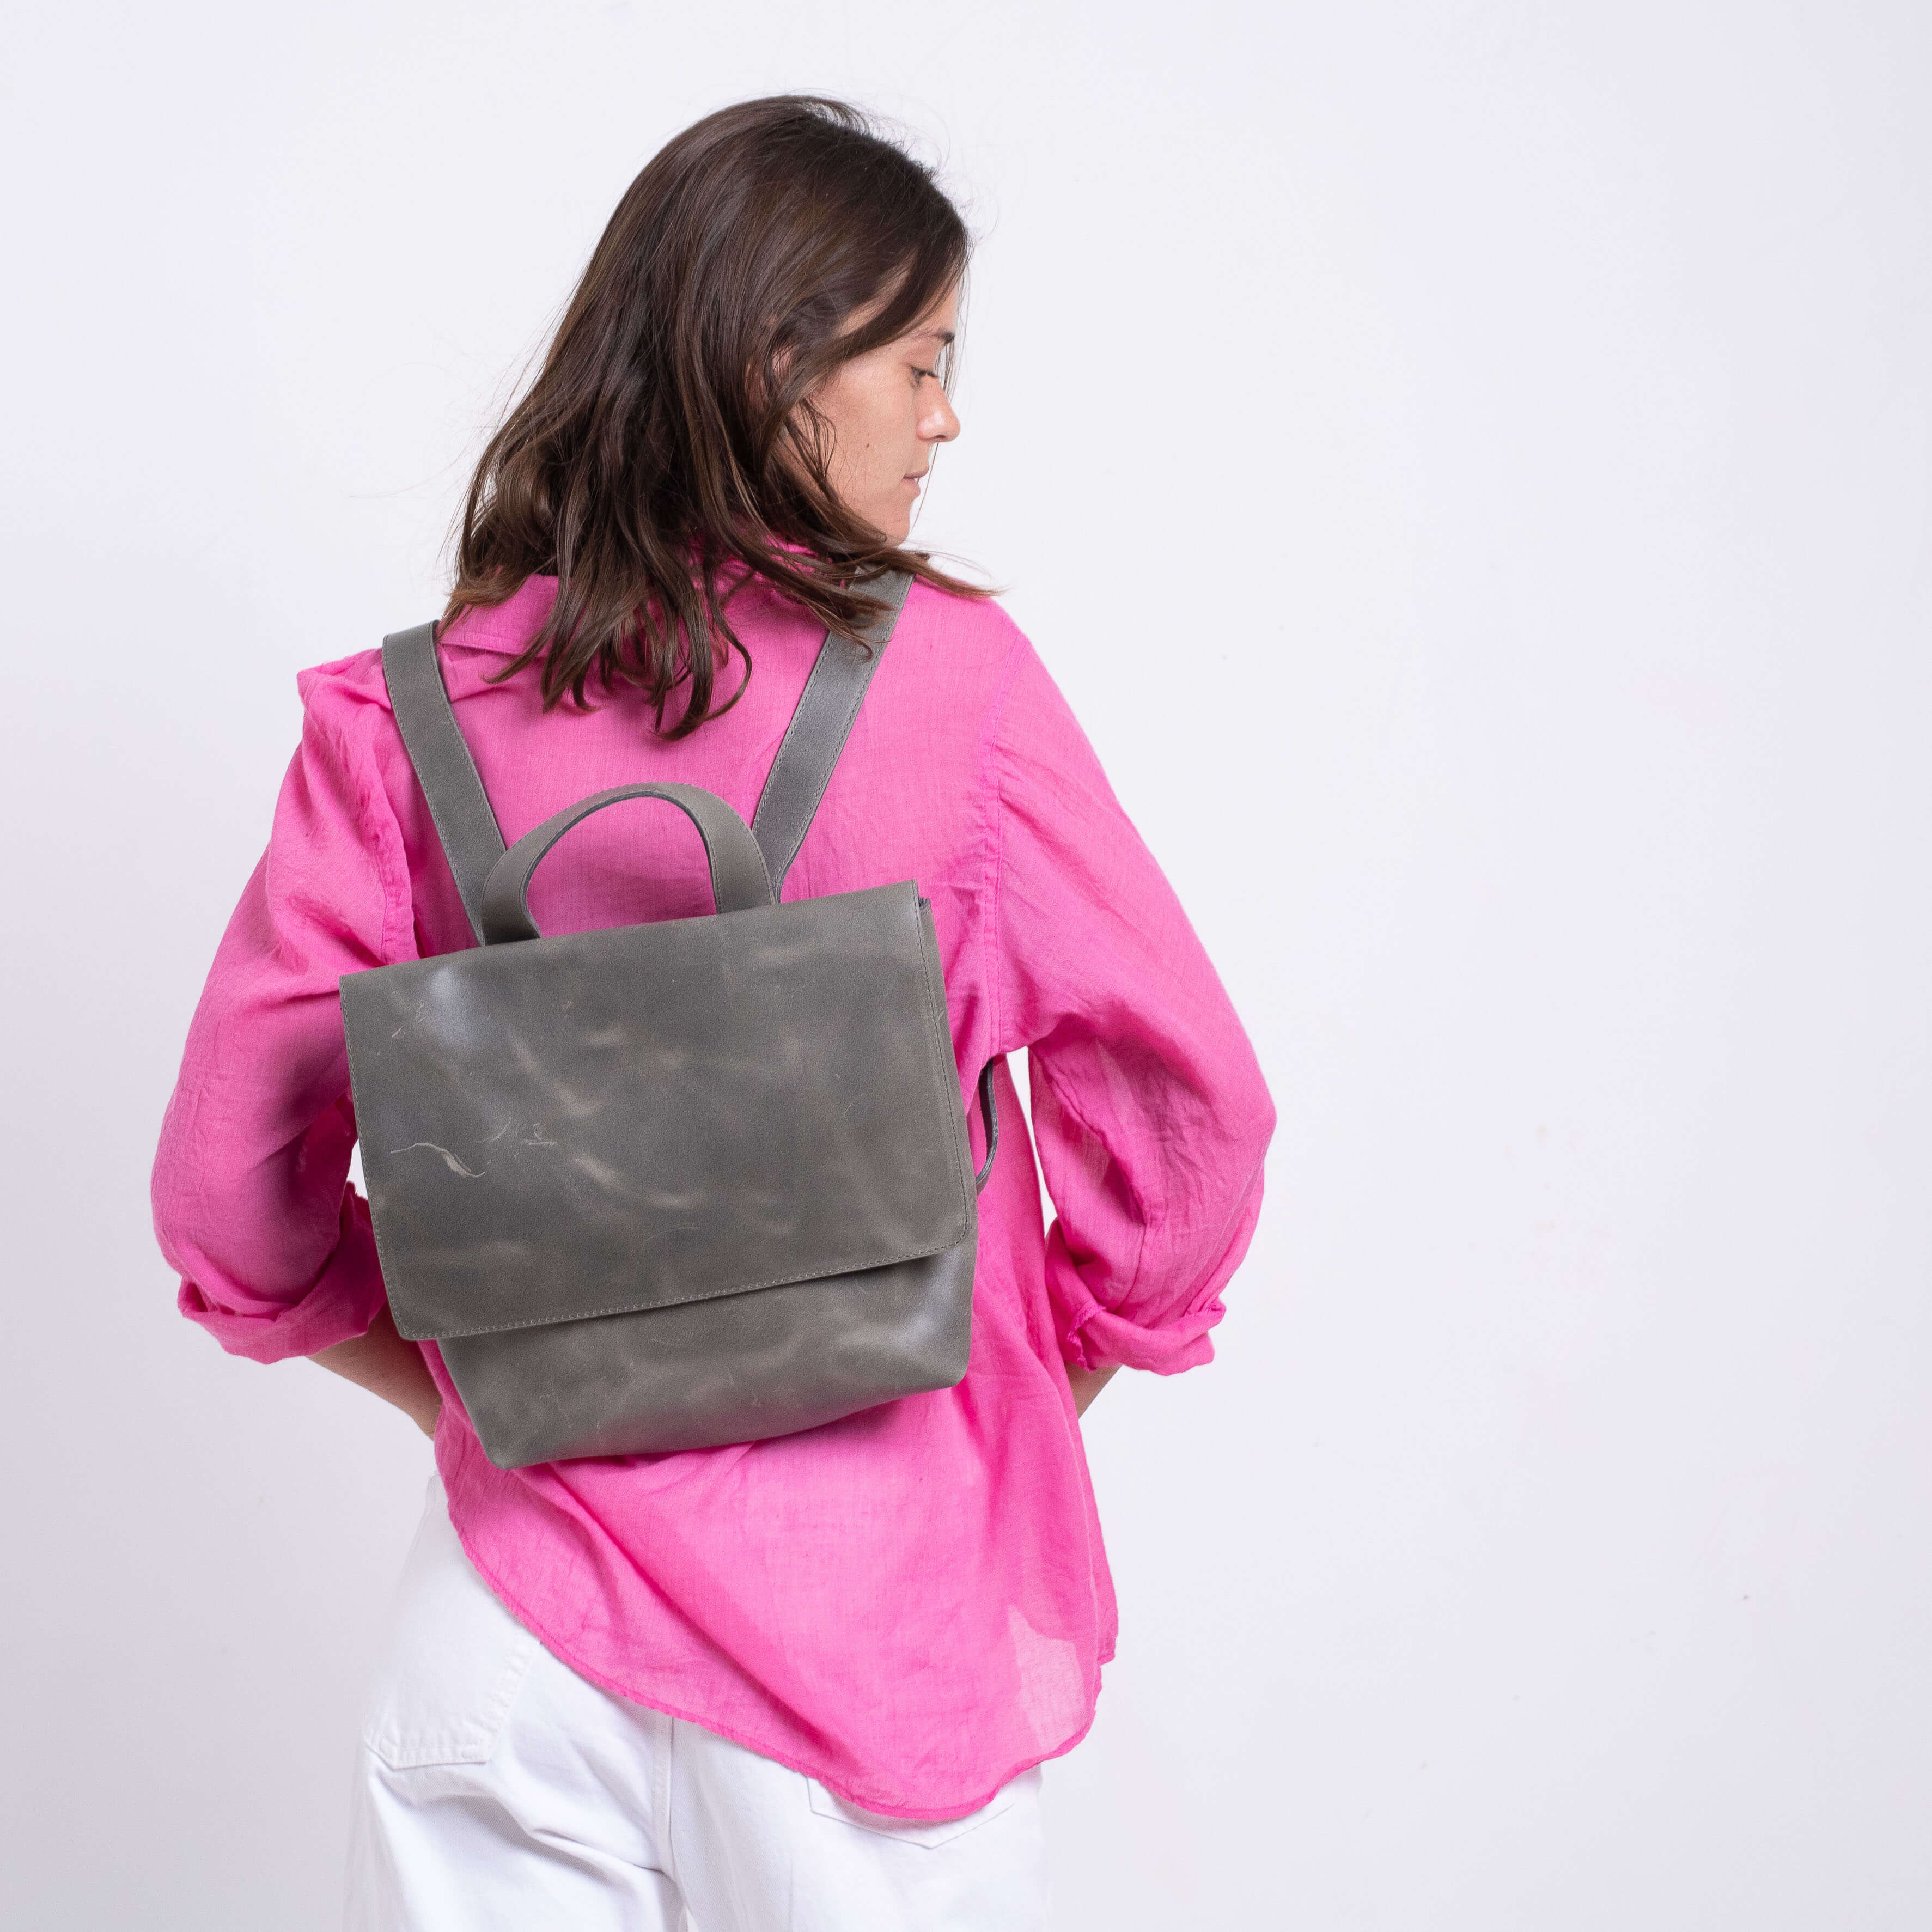 Custom Leather Backpack - Sack